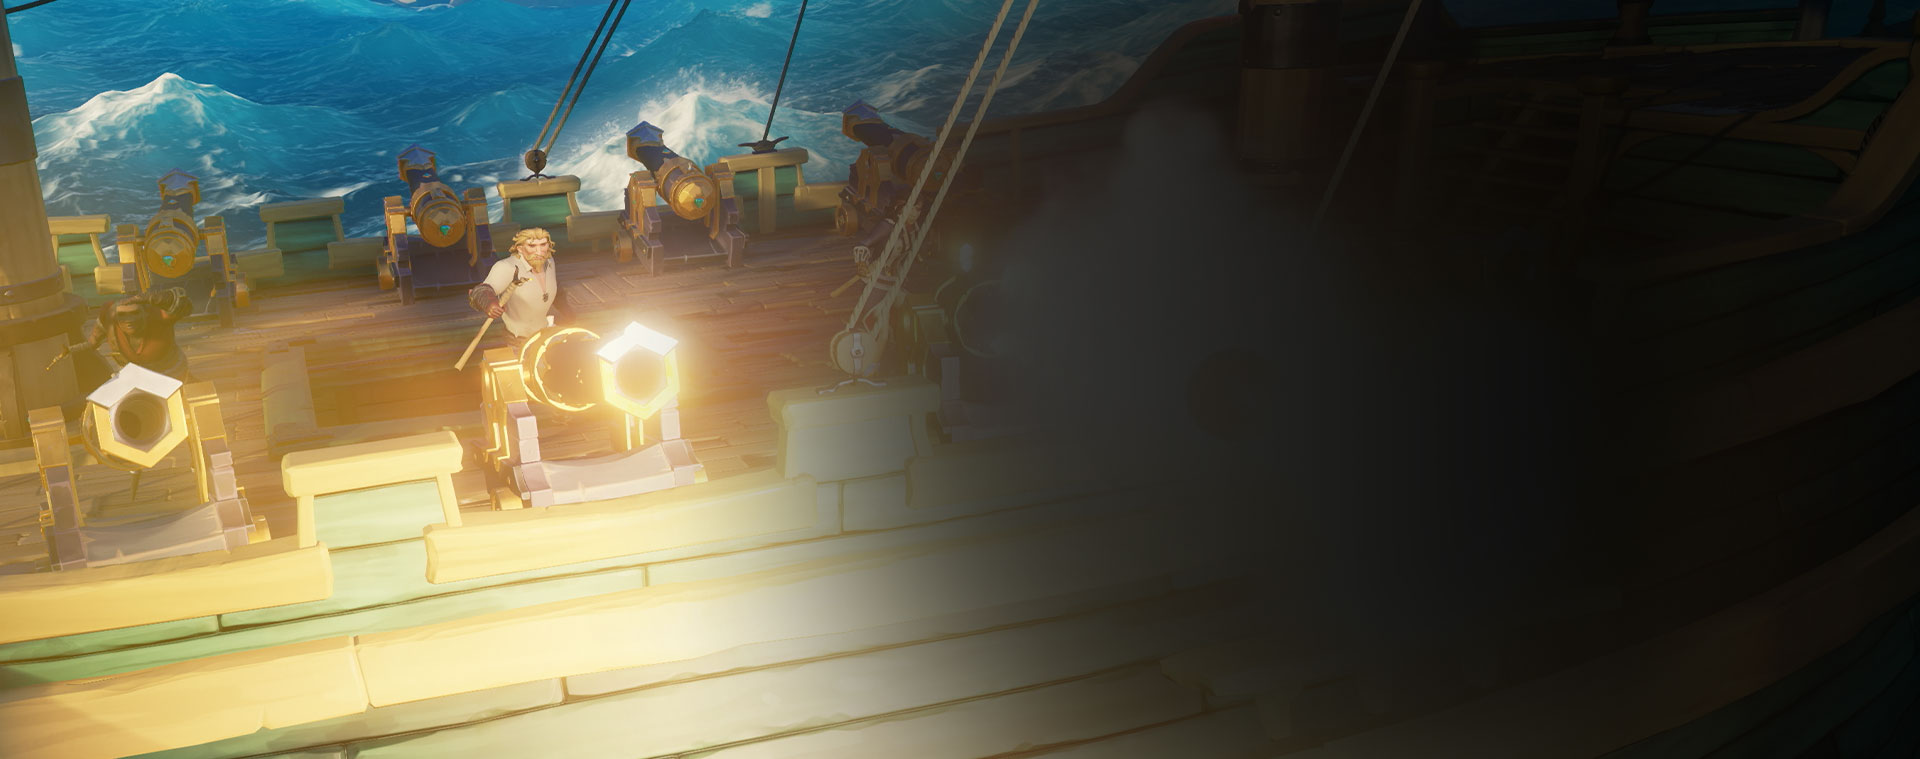 Personajes de Sea of Thieves disparando cañones desde un barco